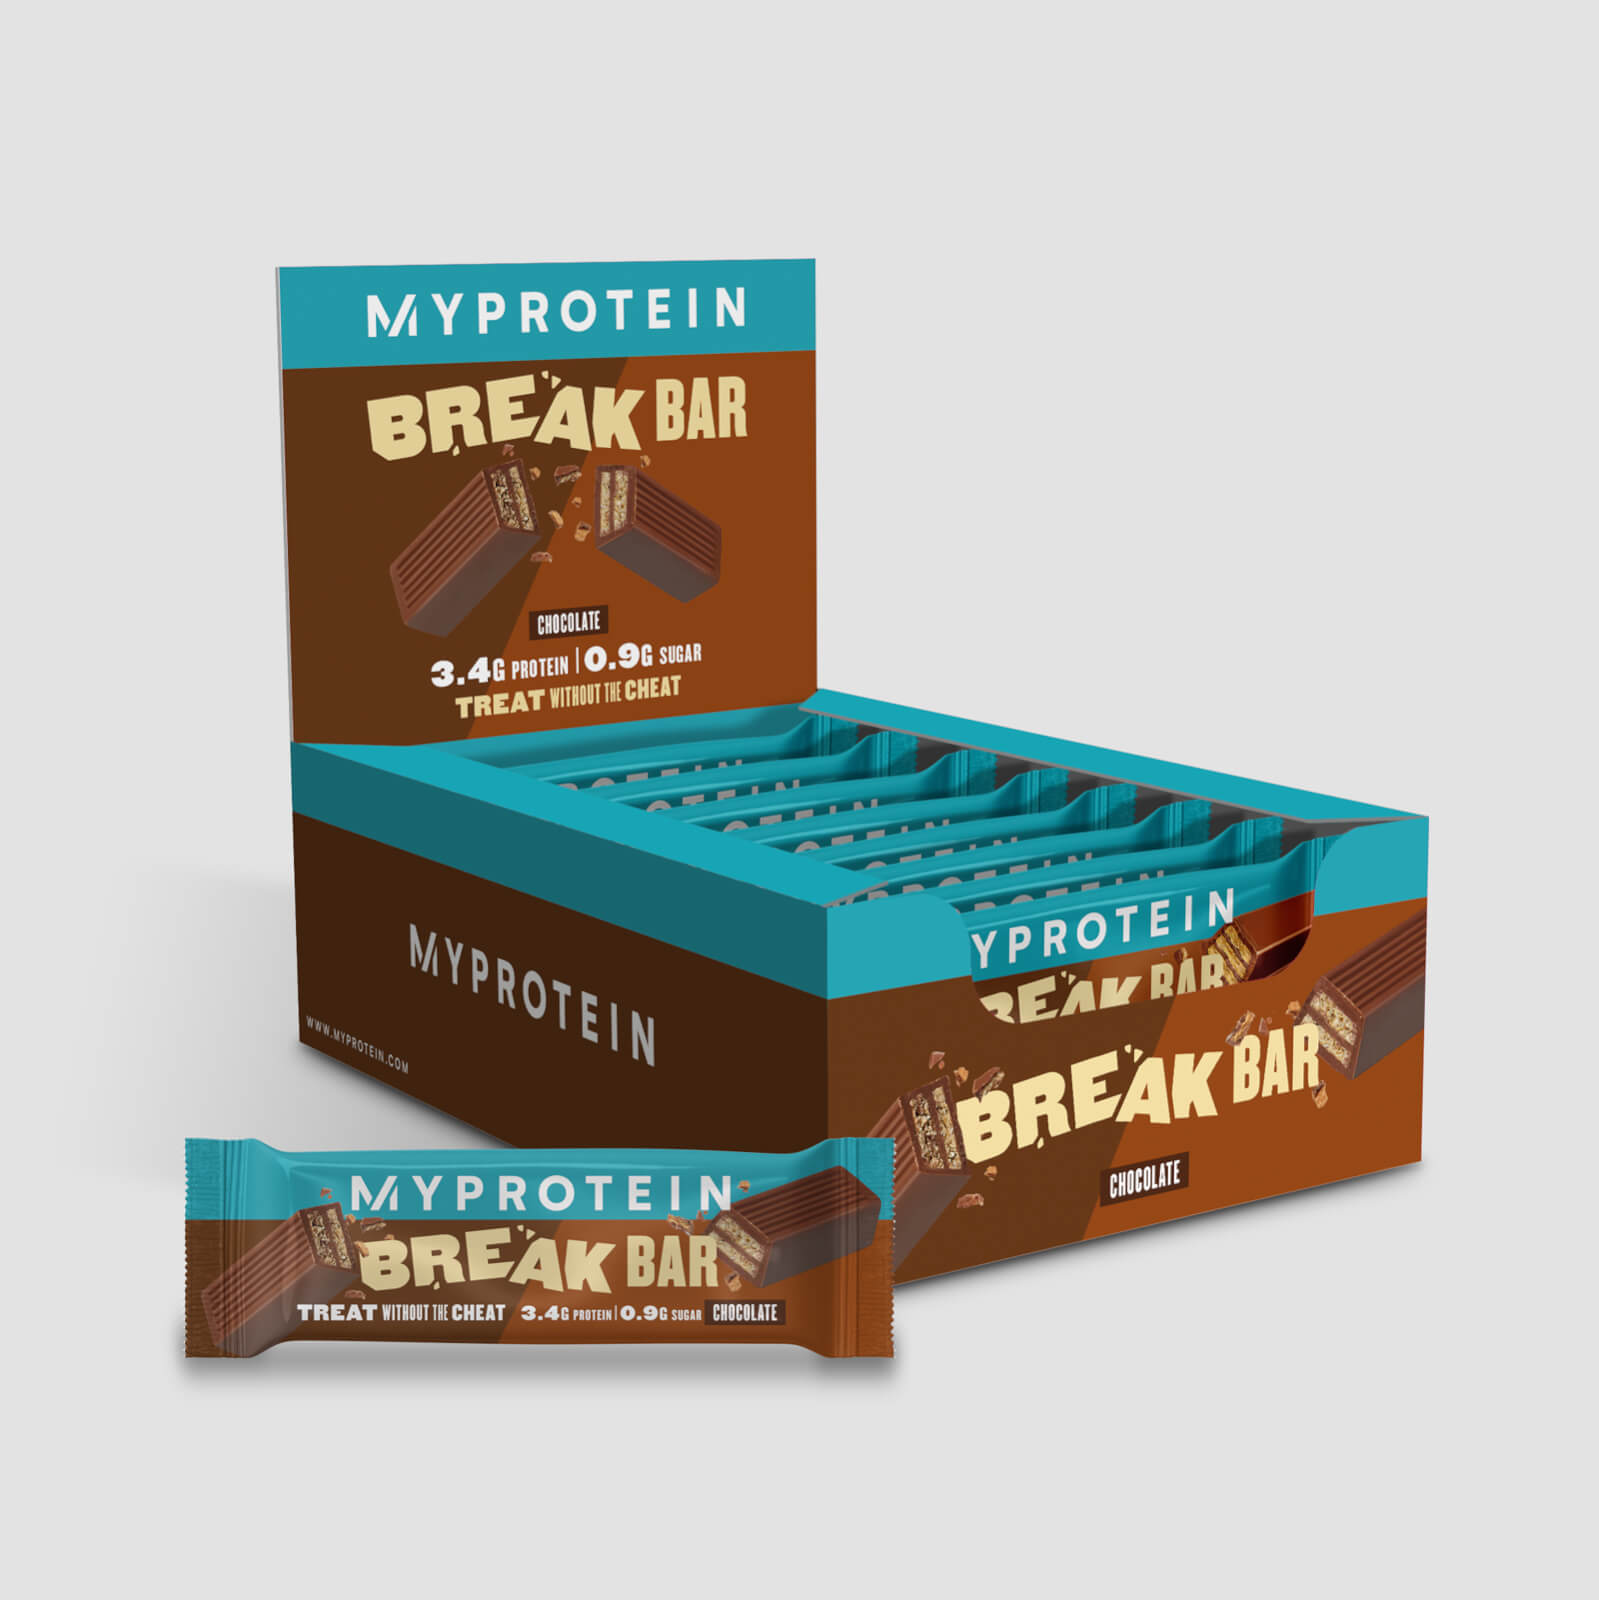 Myprotein Protein Break Bar - 16 x 21.5g - Chocolate